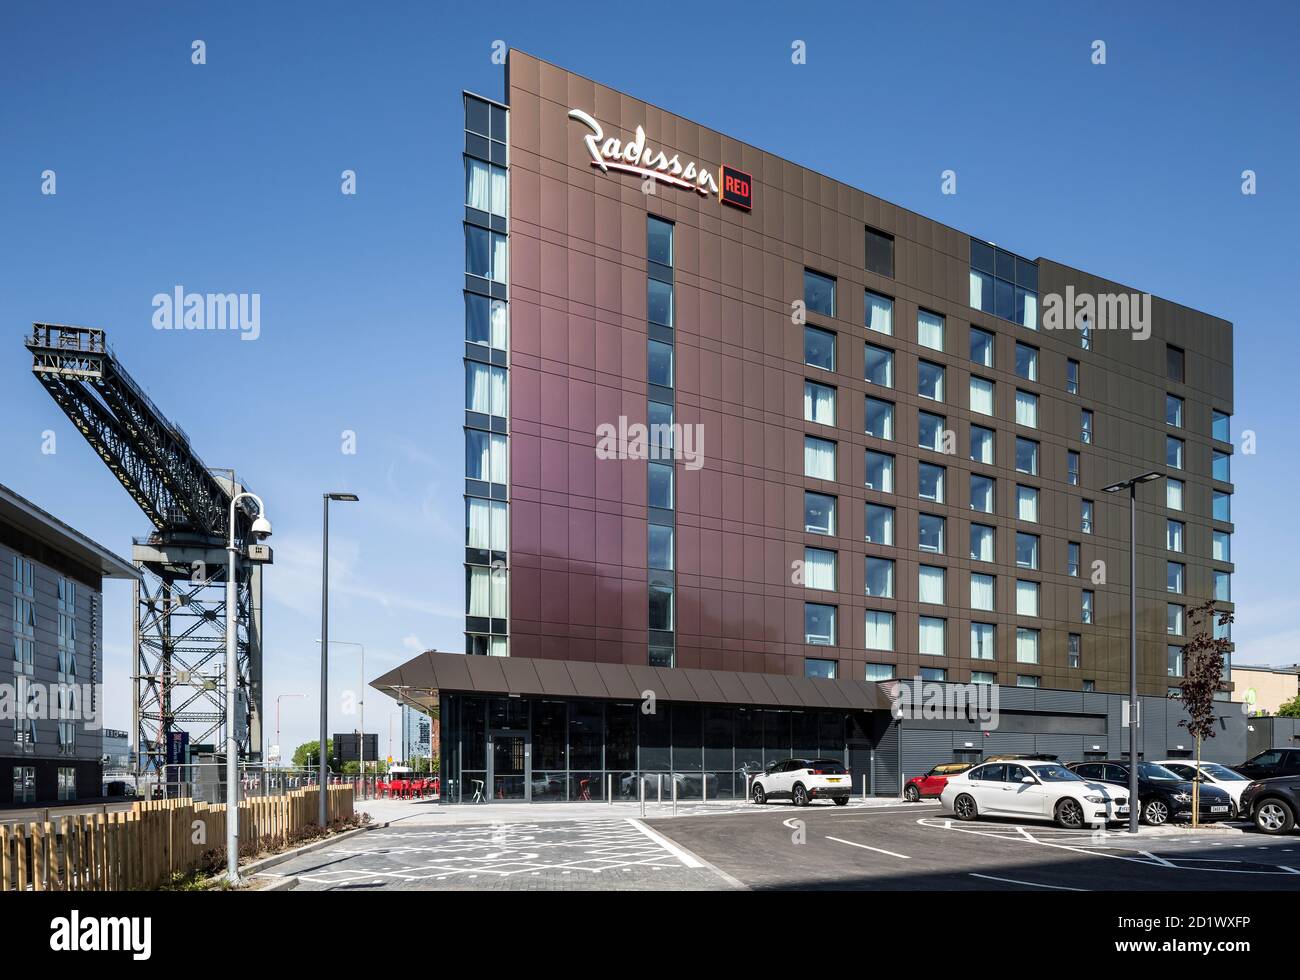 Außenansicht des Radisson RED Hotels mit 174 Zimmern, Glasgow, Schottland, Großbritannien. Stockfoto